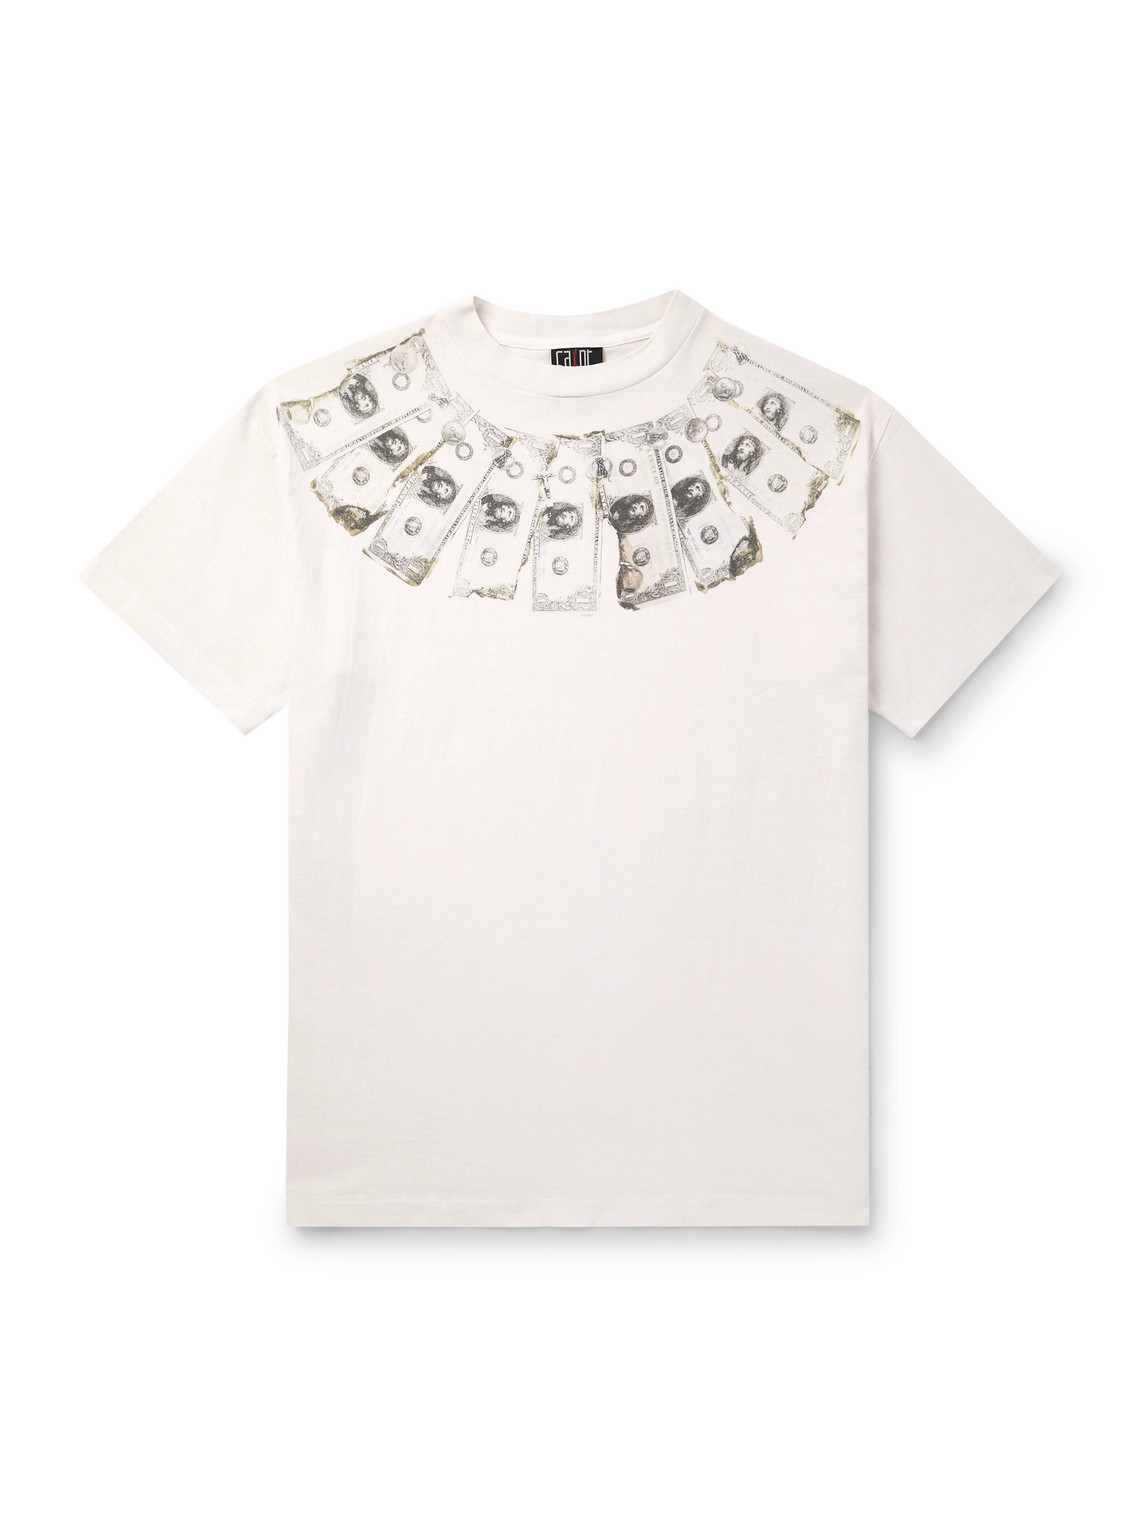 SAINT Mxxxxxx - A Future To Last Forever Printed Cotton-Jersey T-Shirt - Men - Neutrals - M von SAINT Mxxxxxx